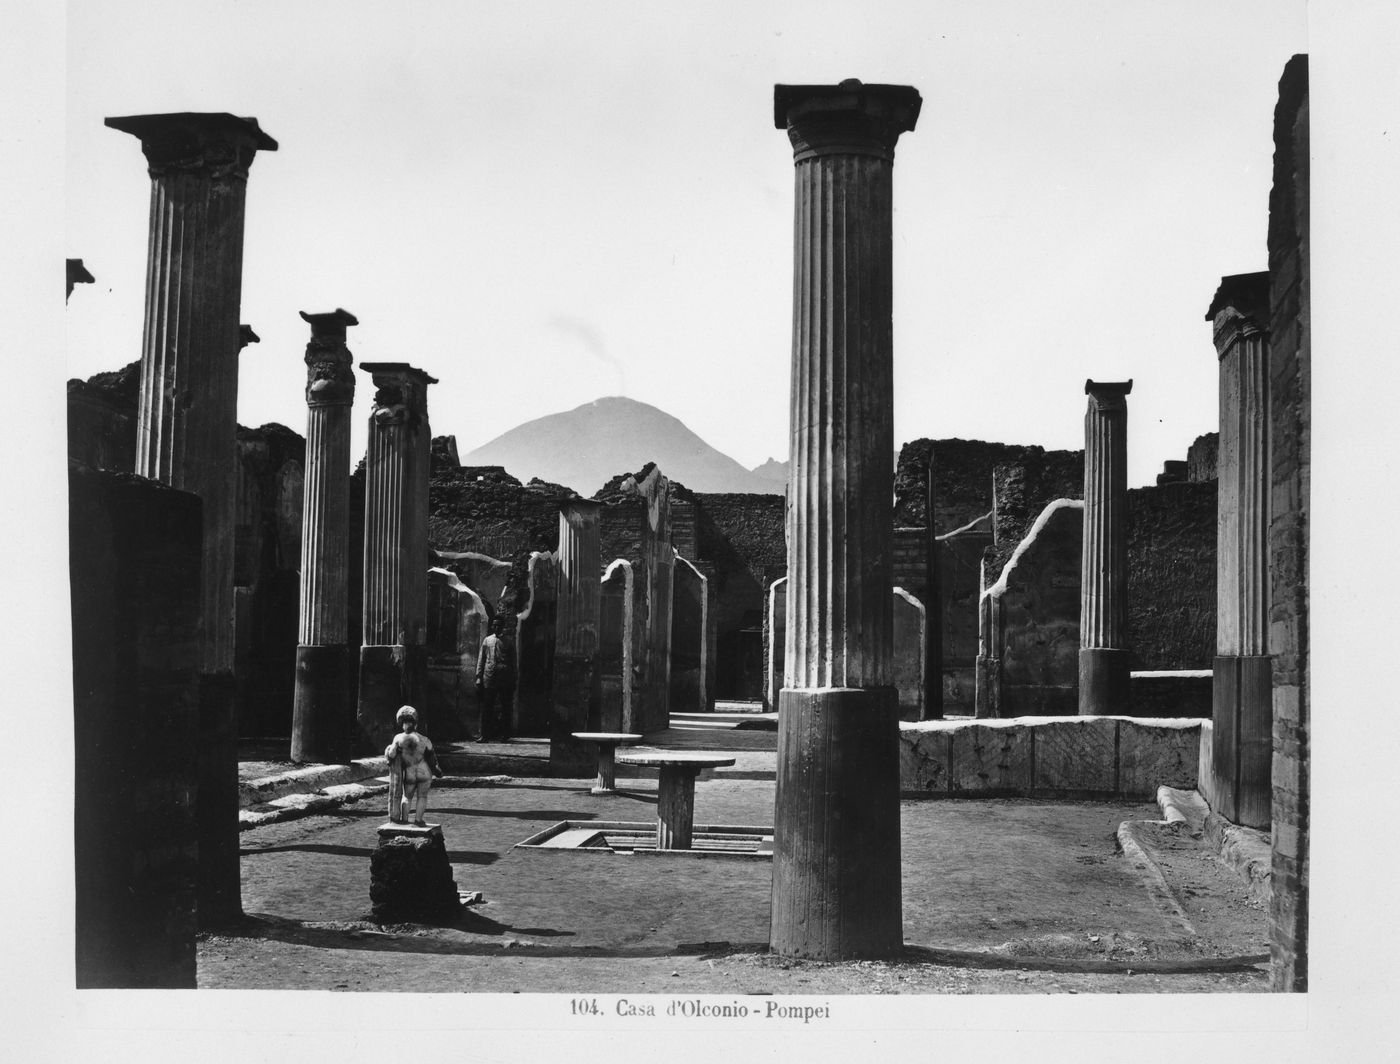 104. Casa d'Olconio - Pompei